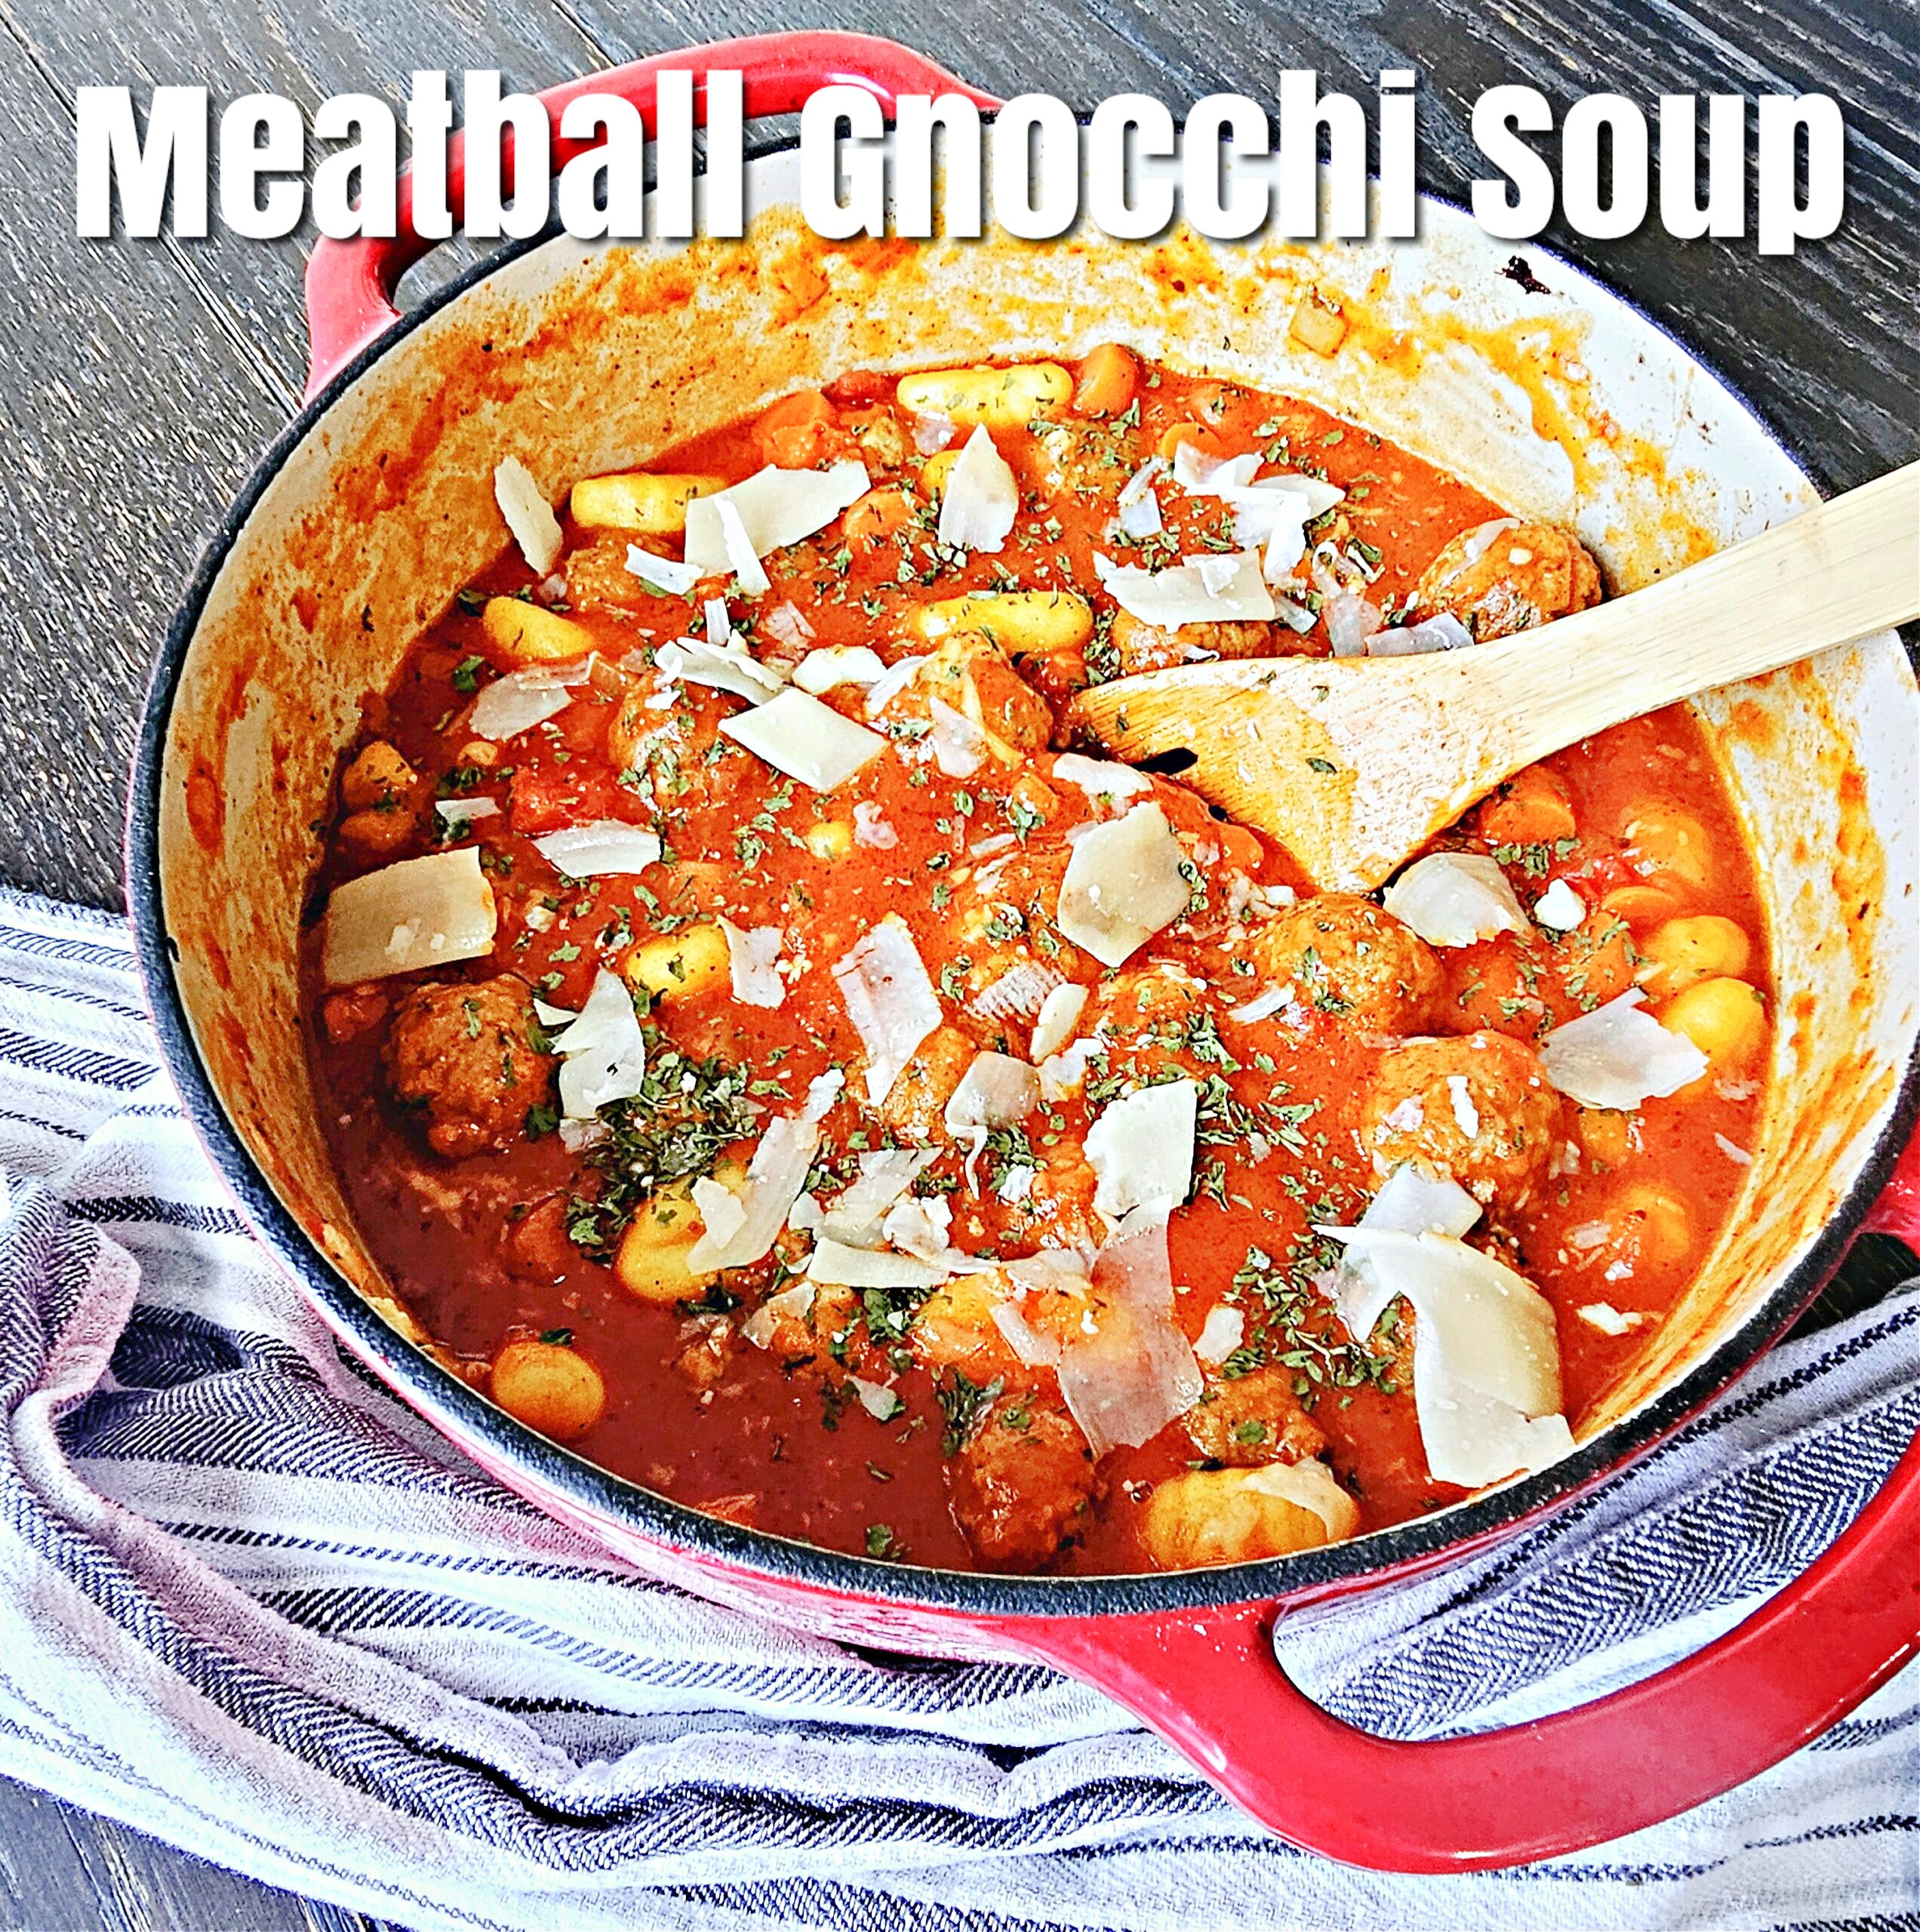 Meatball Gnocchi Soup #meatball #gnocchi #souprecipe #onepotmeal #dinner #winterrecipe #easydinner